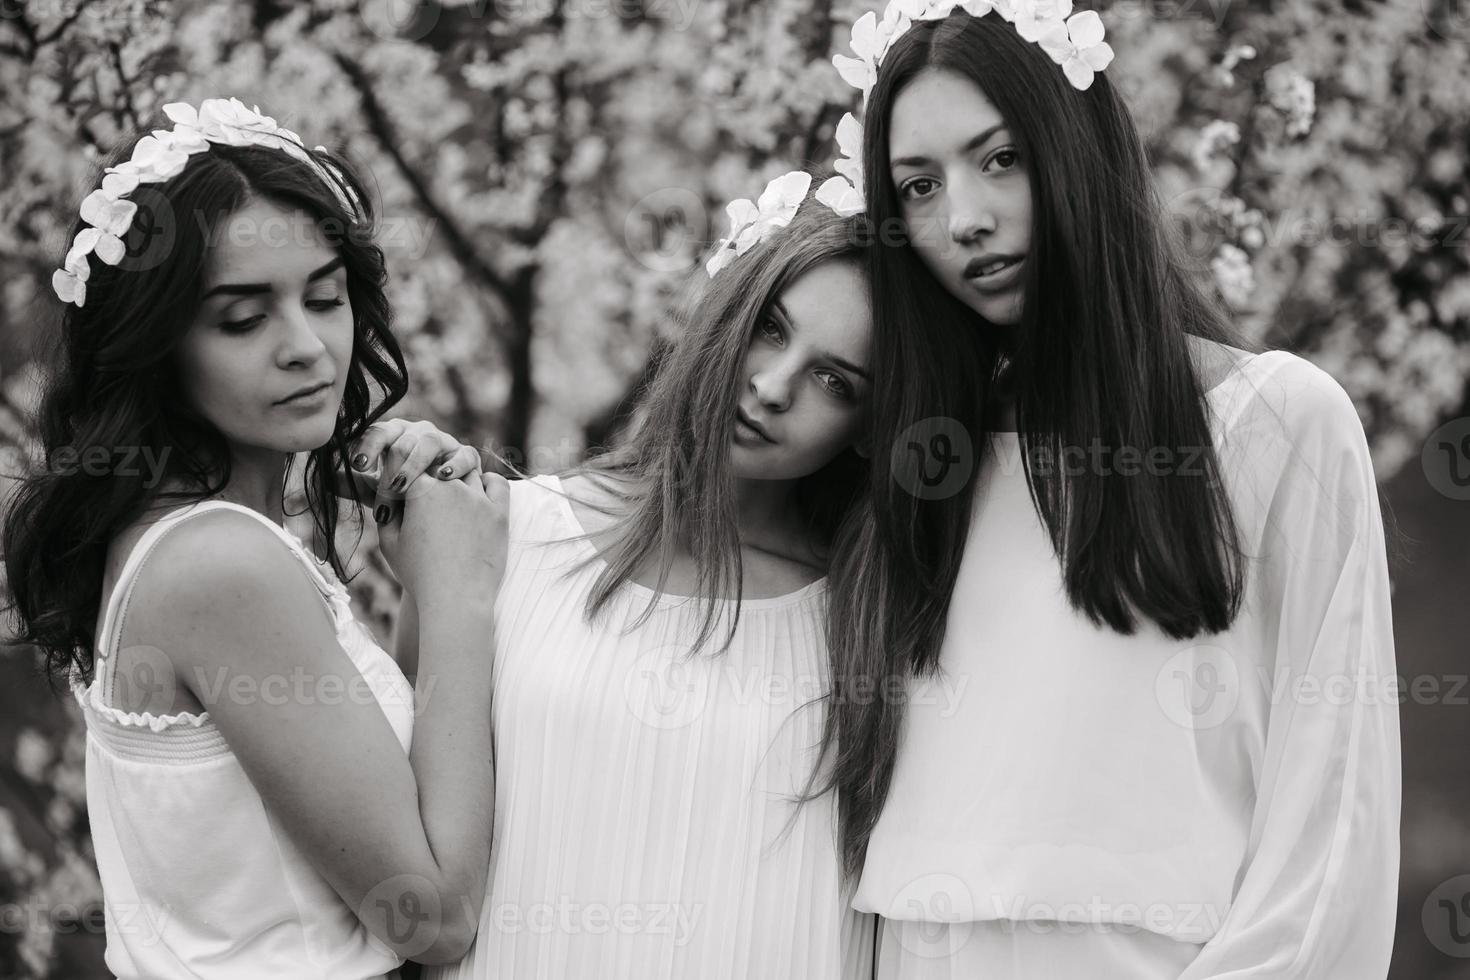 tres chicas encantadoras en un jardín foto